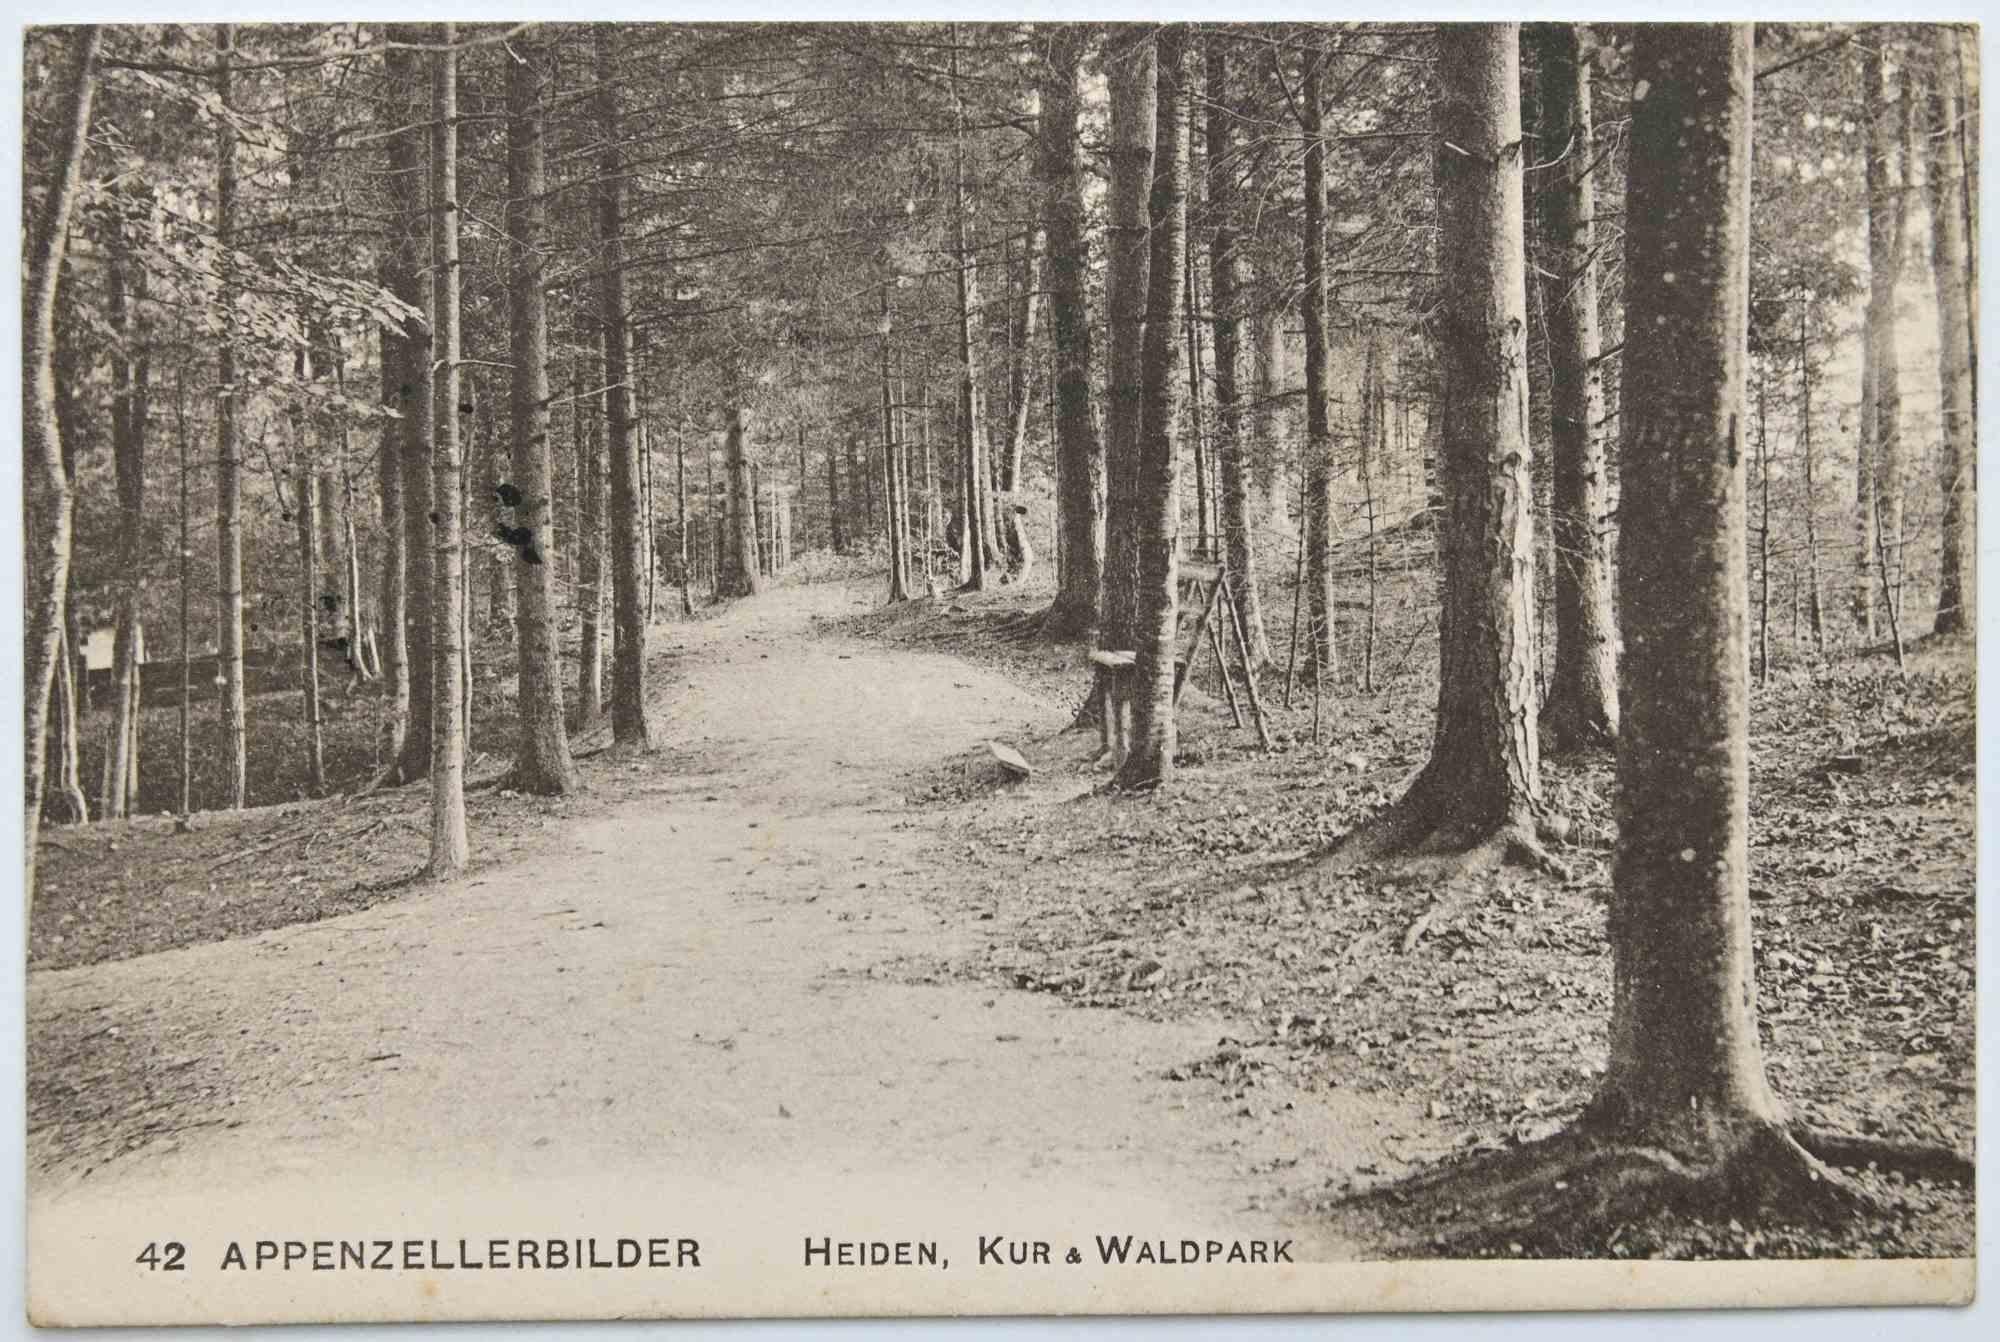 Vintage Postcard of Appenzellerbilder, Heiden, Kur & Waldpark - 1957